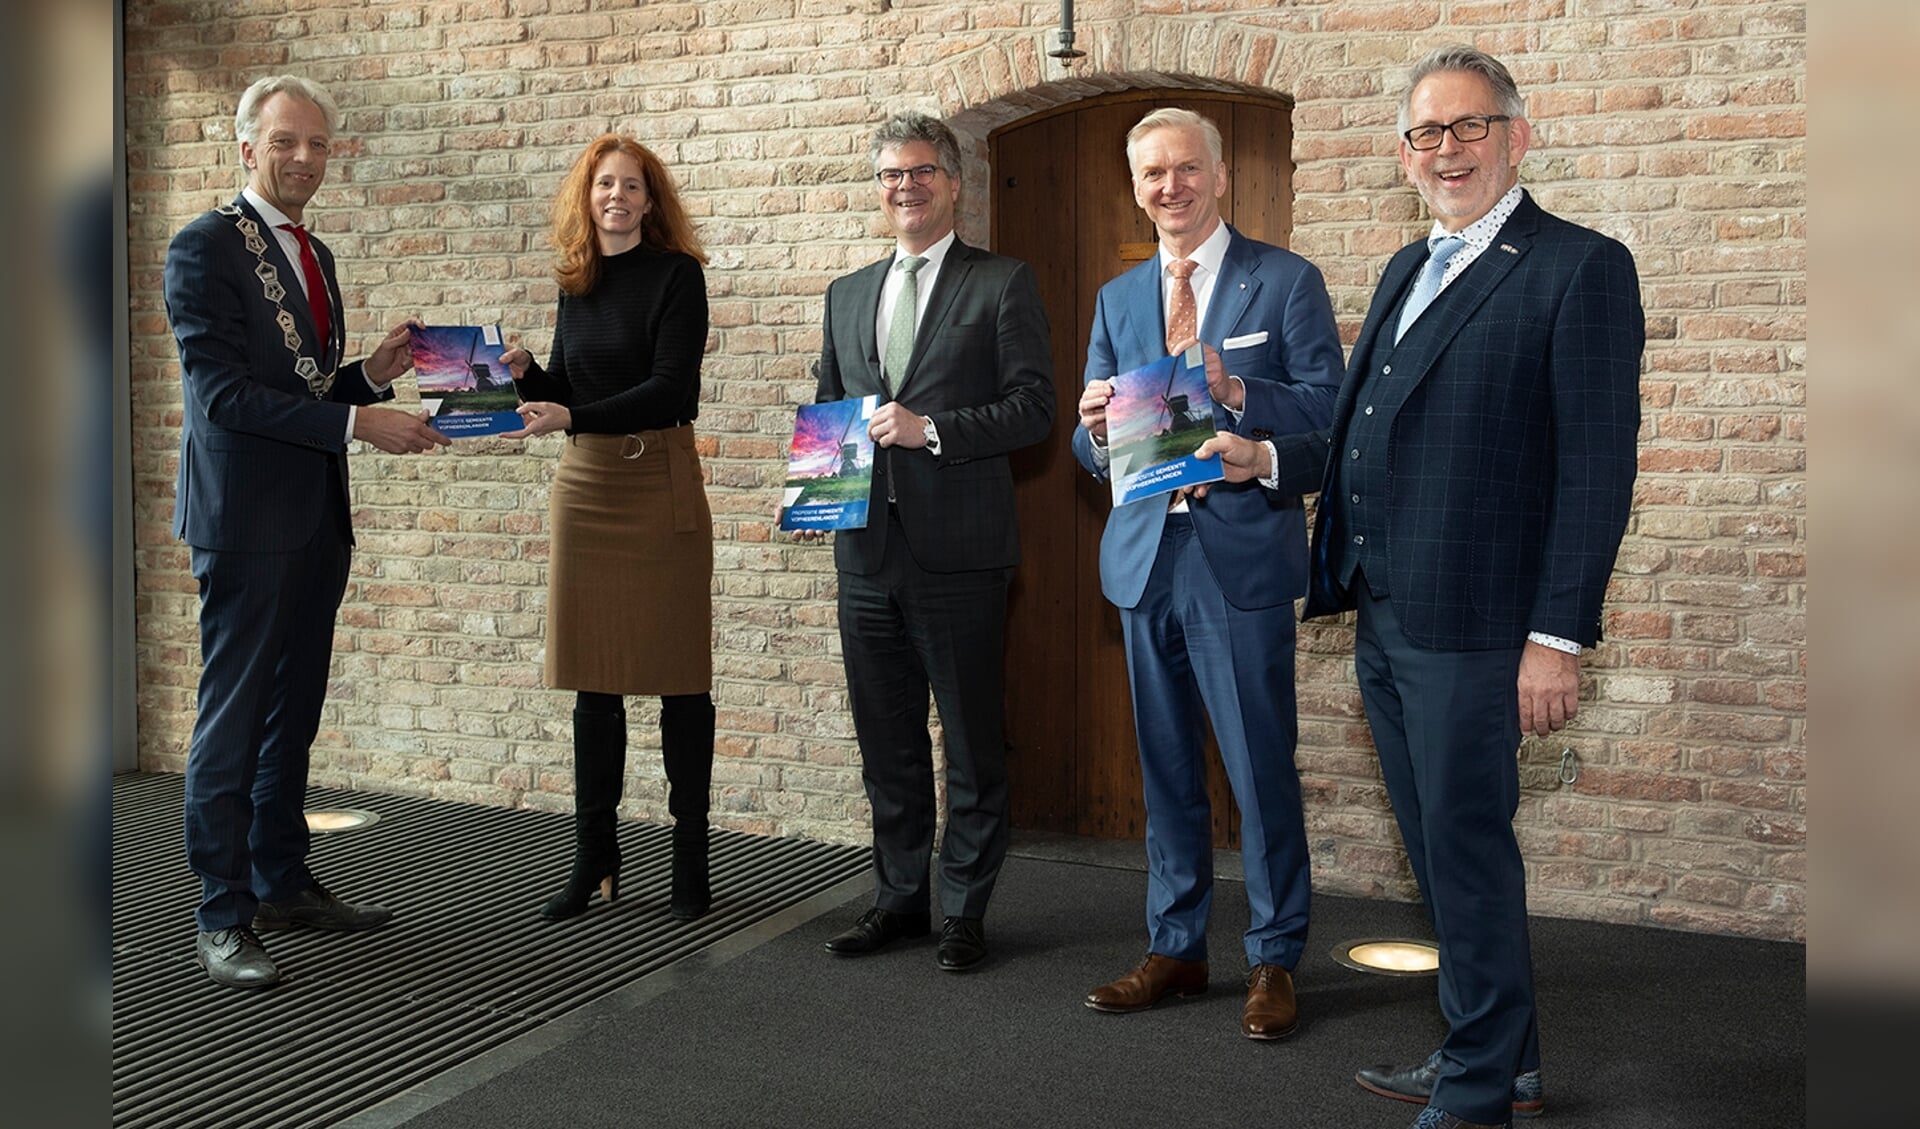 De gemeente Vijfheerenlanden overhandigt het rapport ‘Propositie Vijfheerenlanden’ aan het ministerie van Binnenlandse Zaken en Koninkrijksrelaties en de provincie Utrecht.